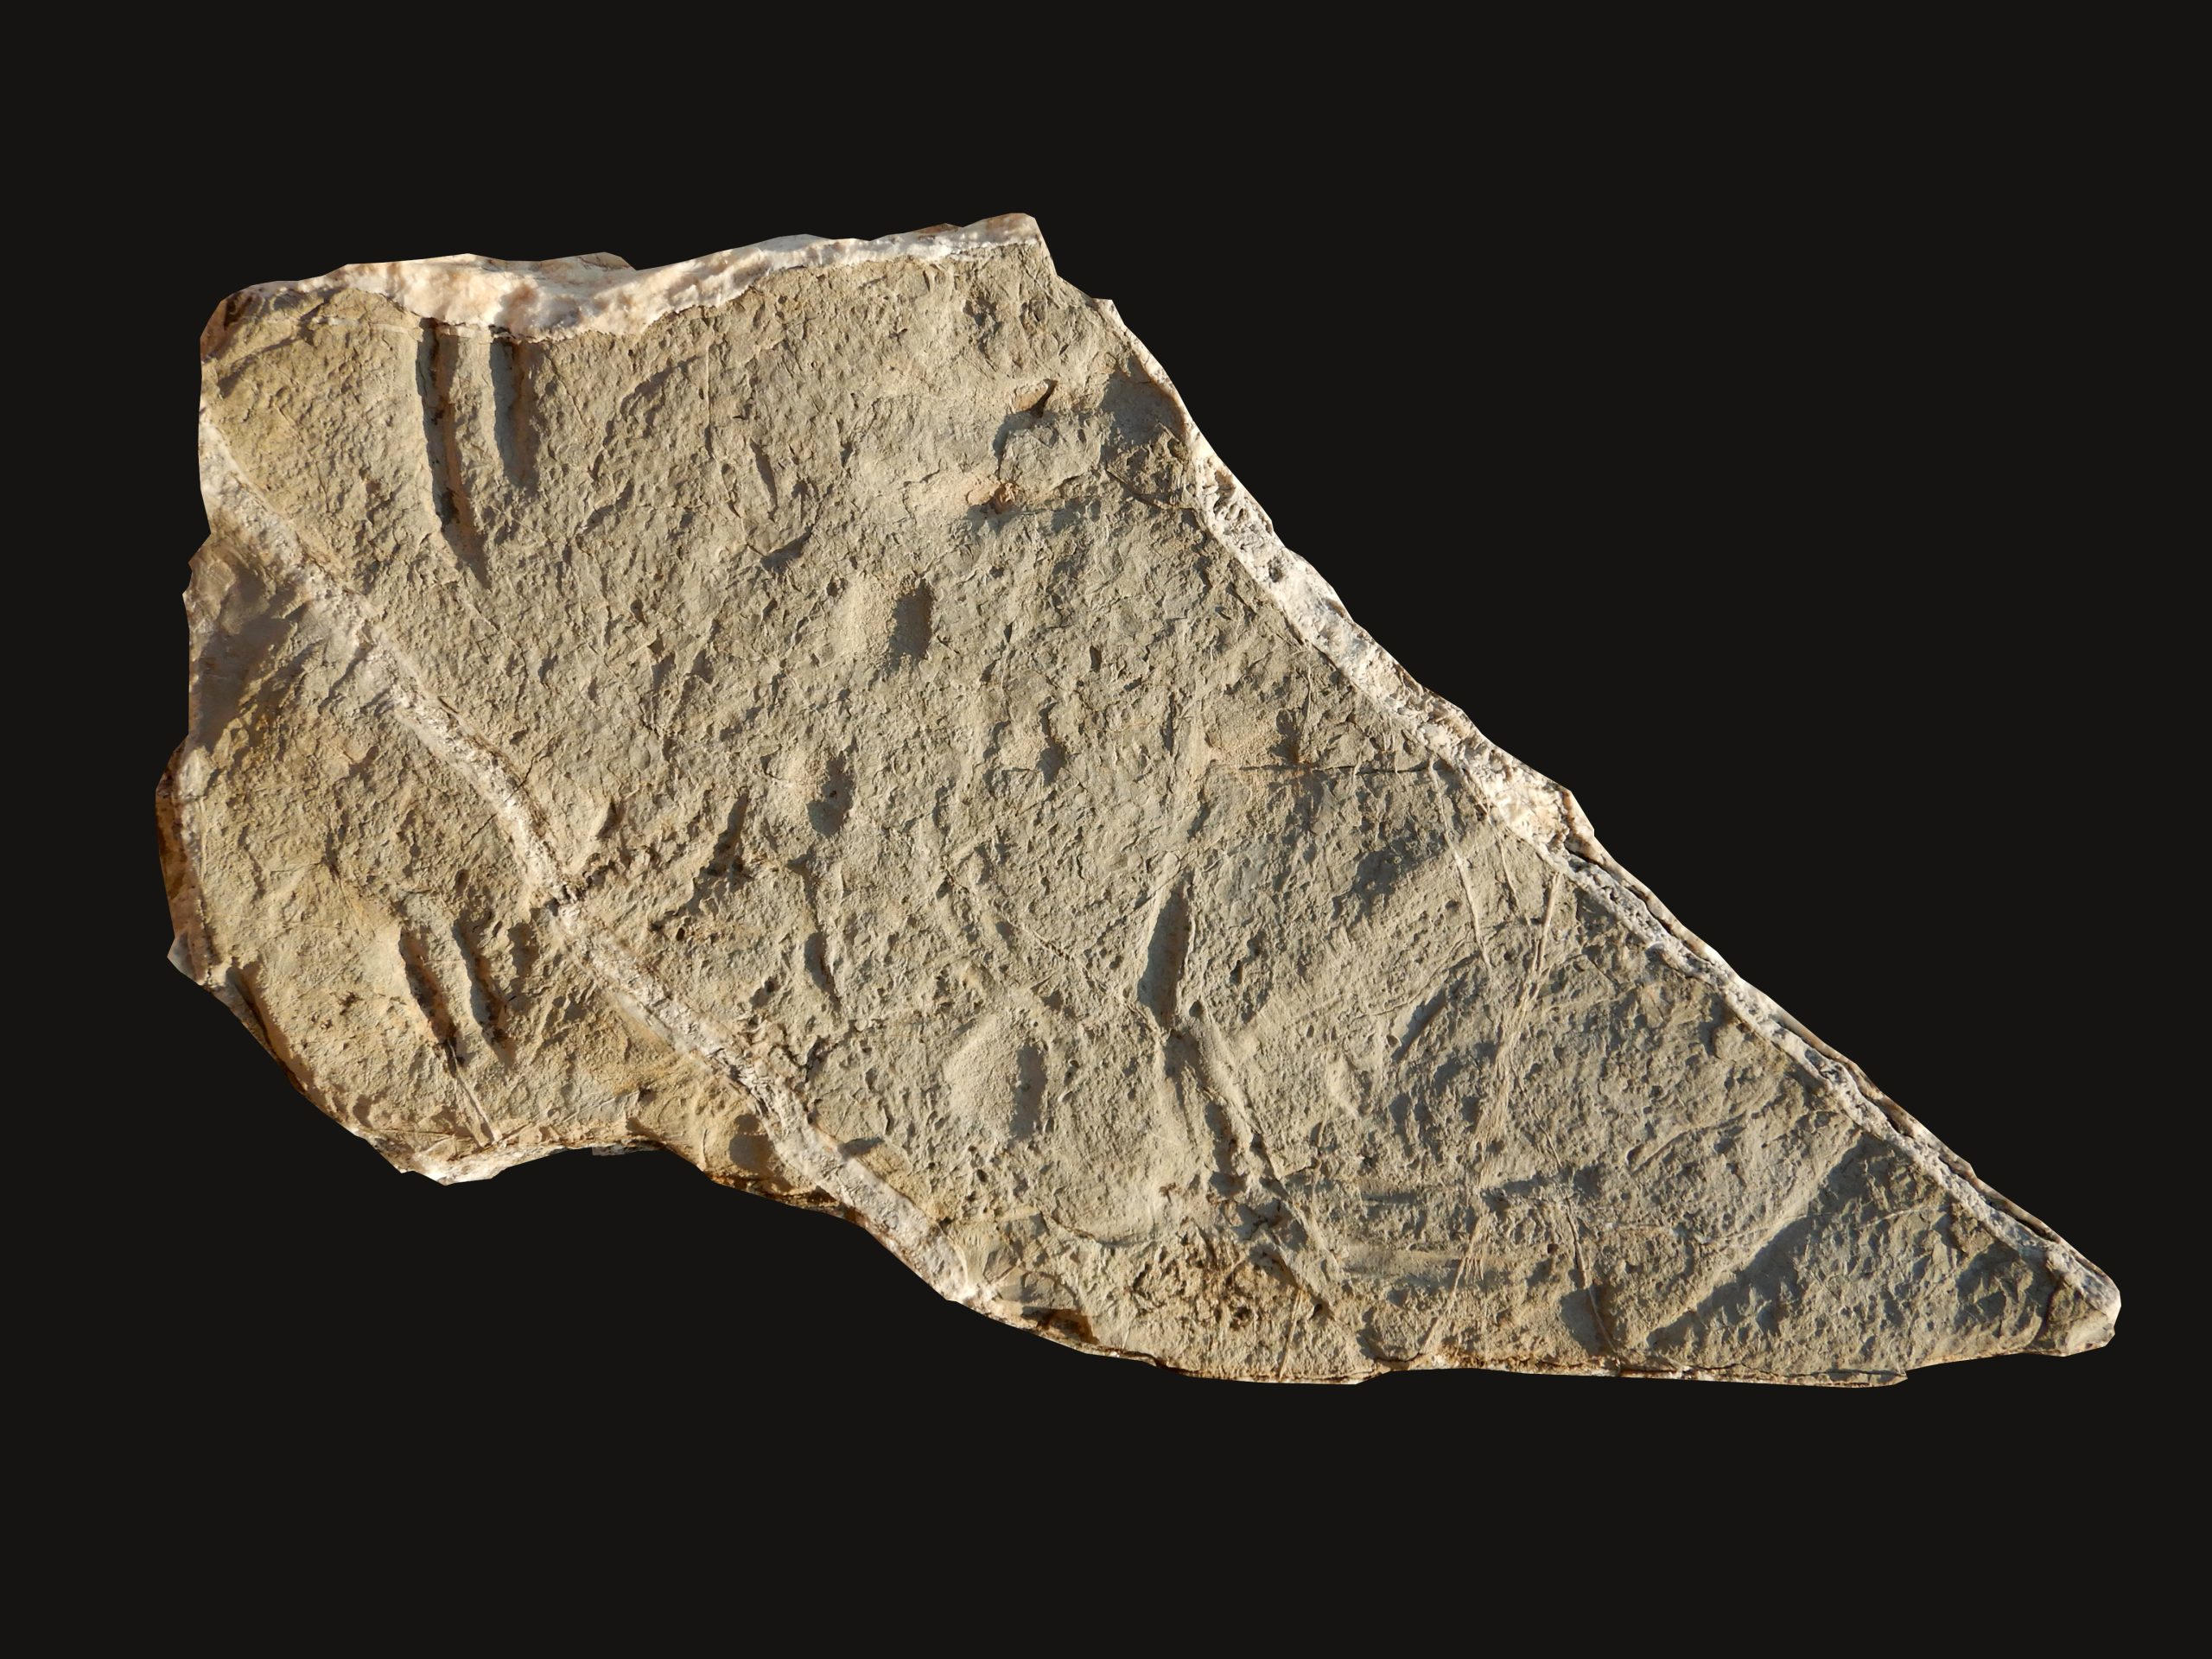 “No podía creer lo que estaba viendo”: descubriendo la pieza faltante del rompecabezas de la evolución en rocas de 130 millones de años